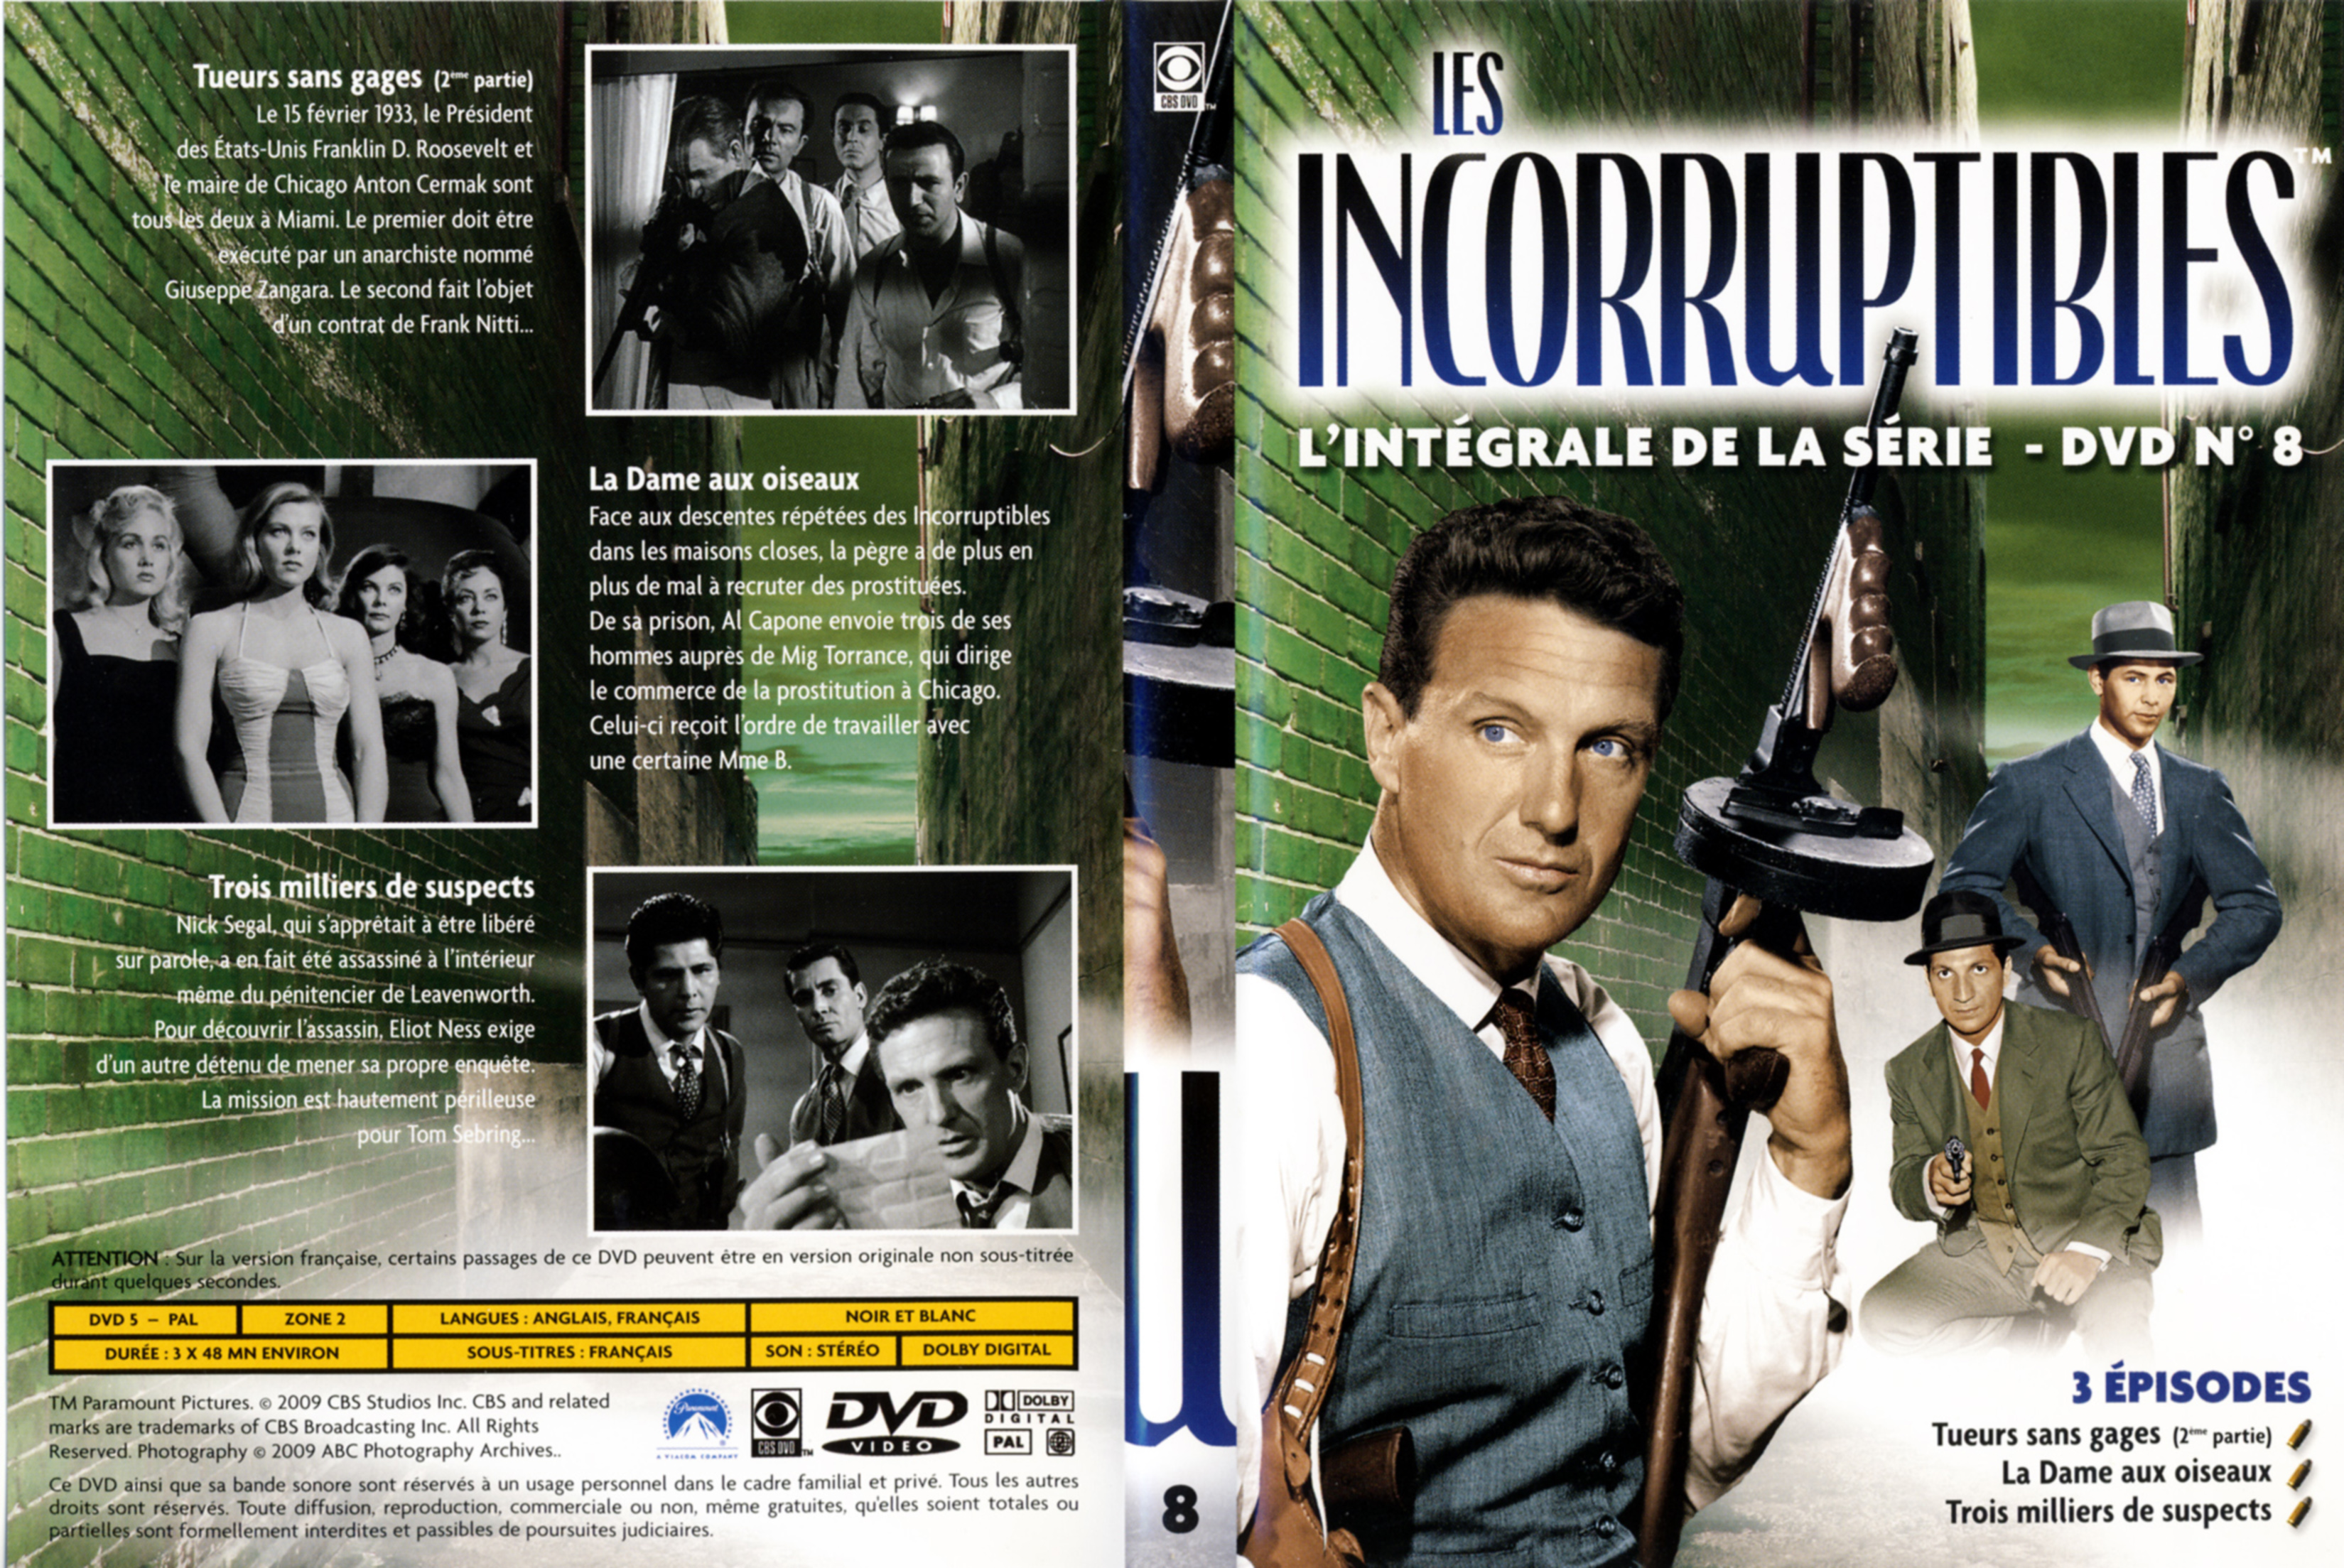 Jaquette DVD Les incorruptibles intgrale DVD 08